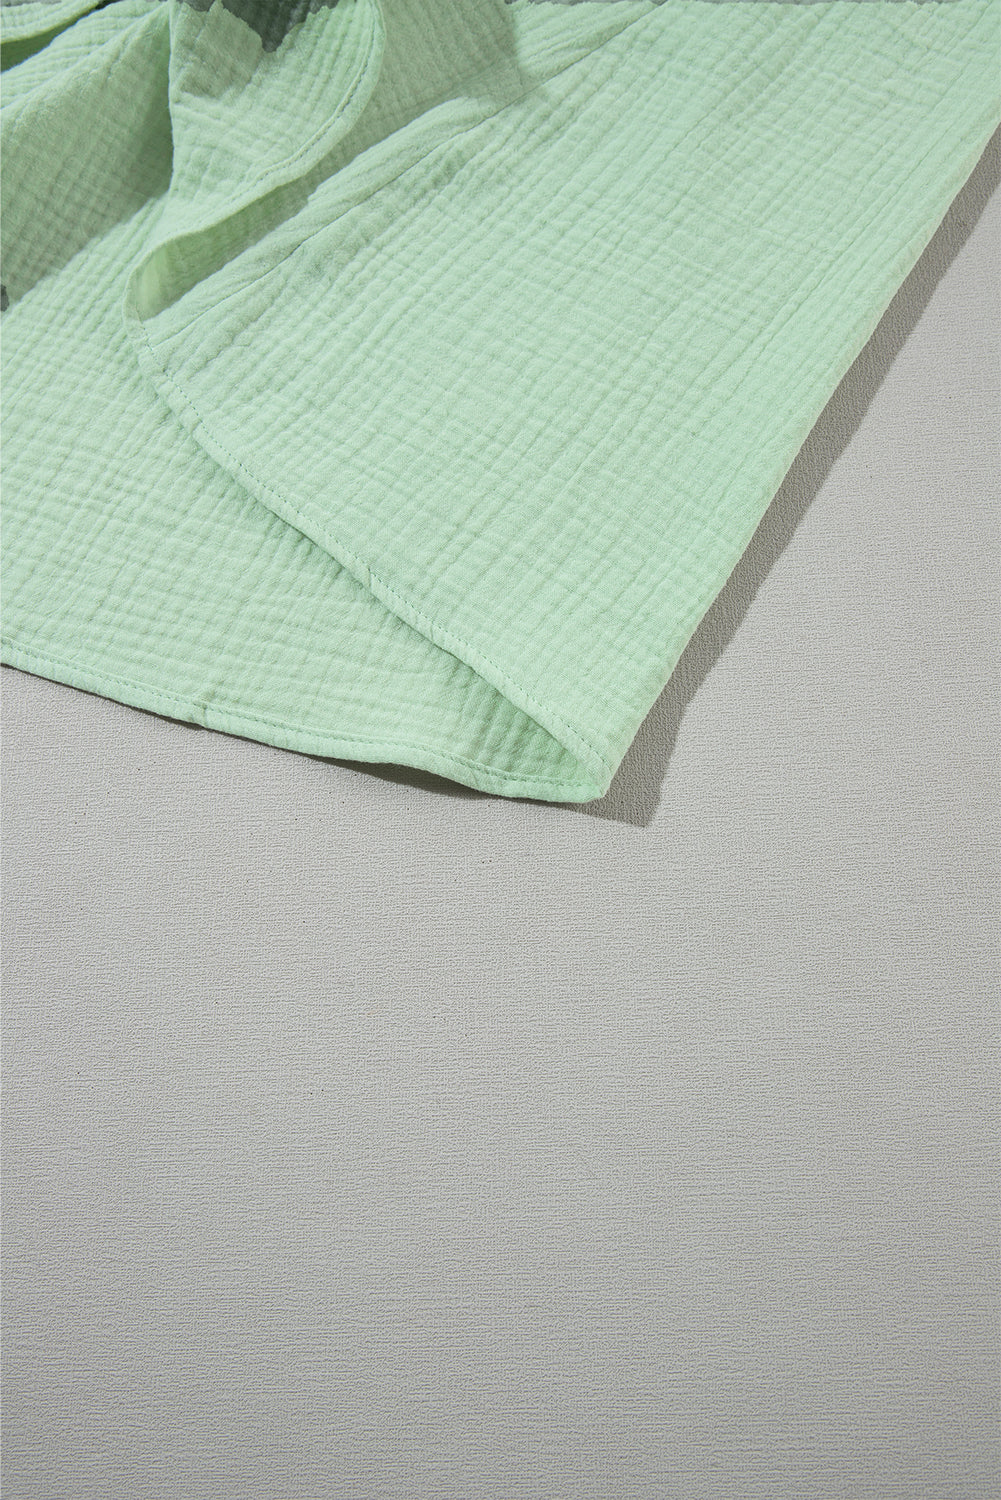 Green Smoked Flounce Sleeve Textured Empire Waist Maxi Dress